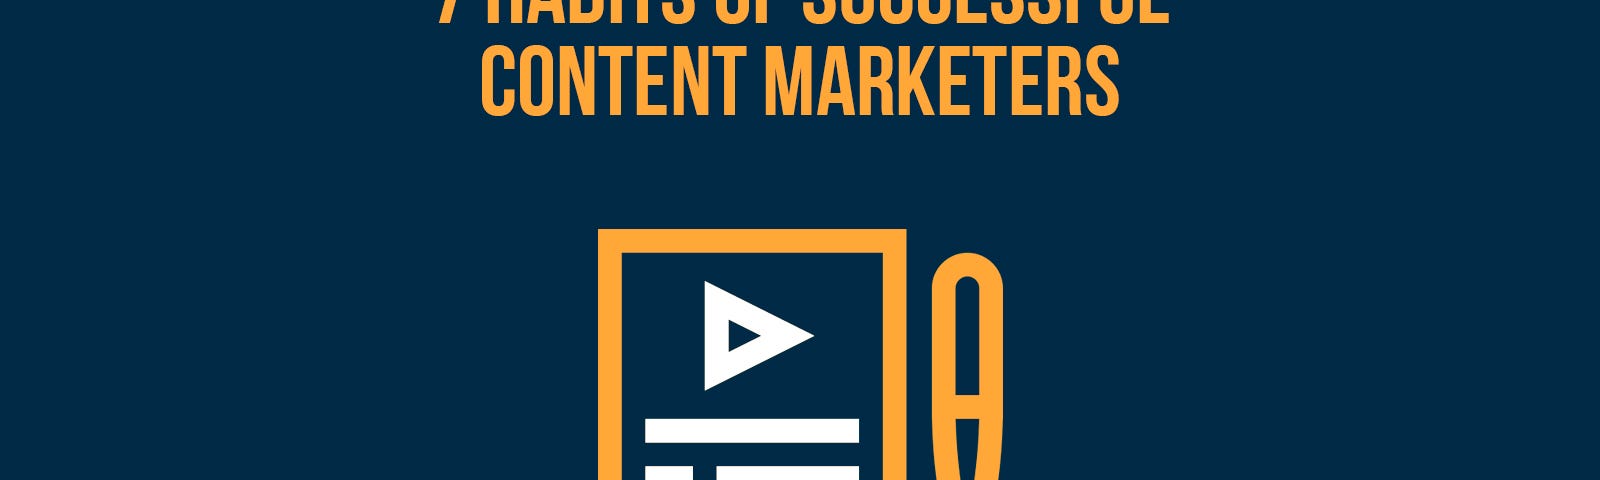 Content Marketers, Habits & Traits, Success